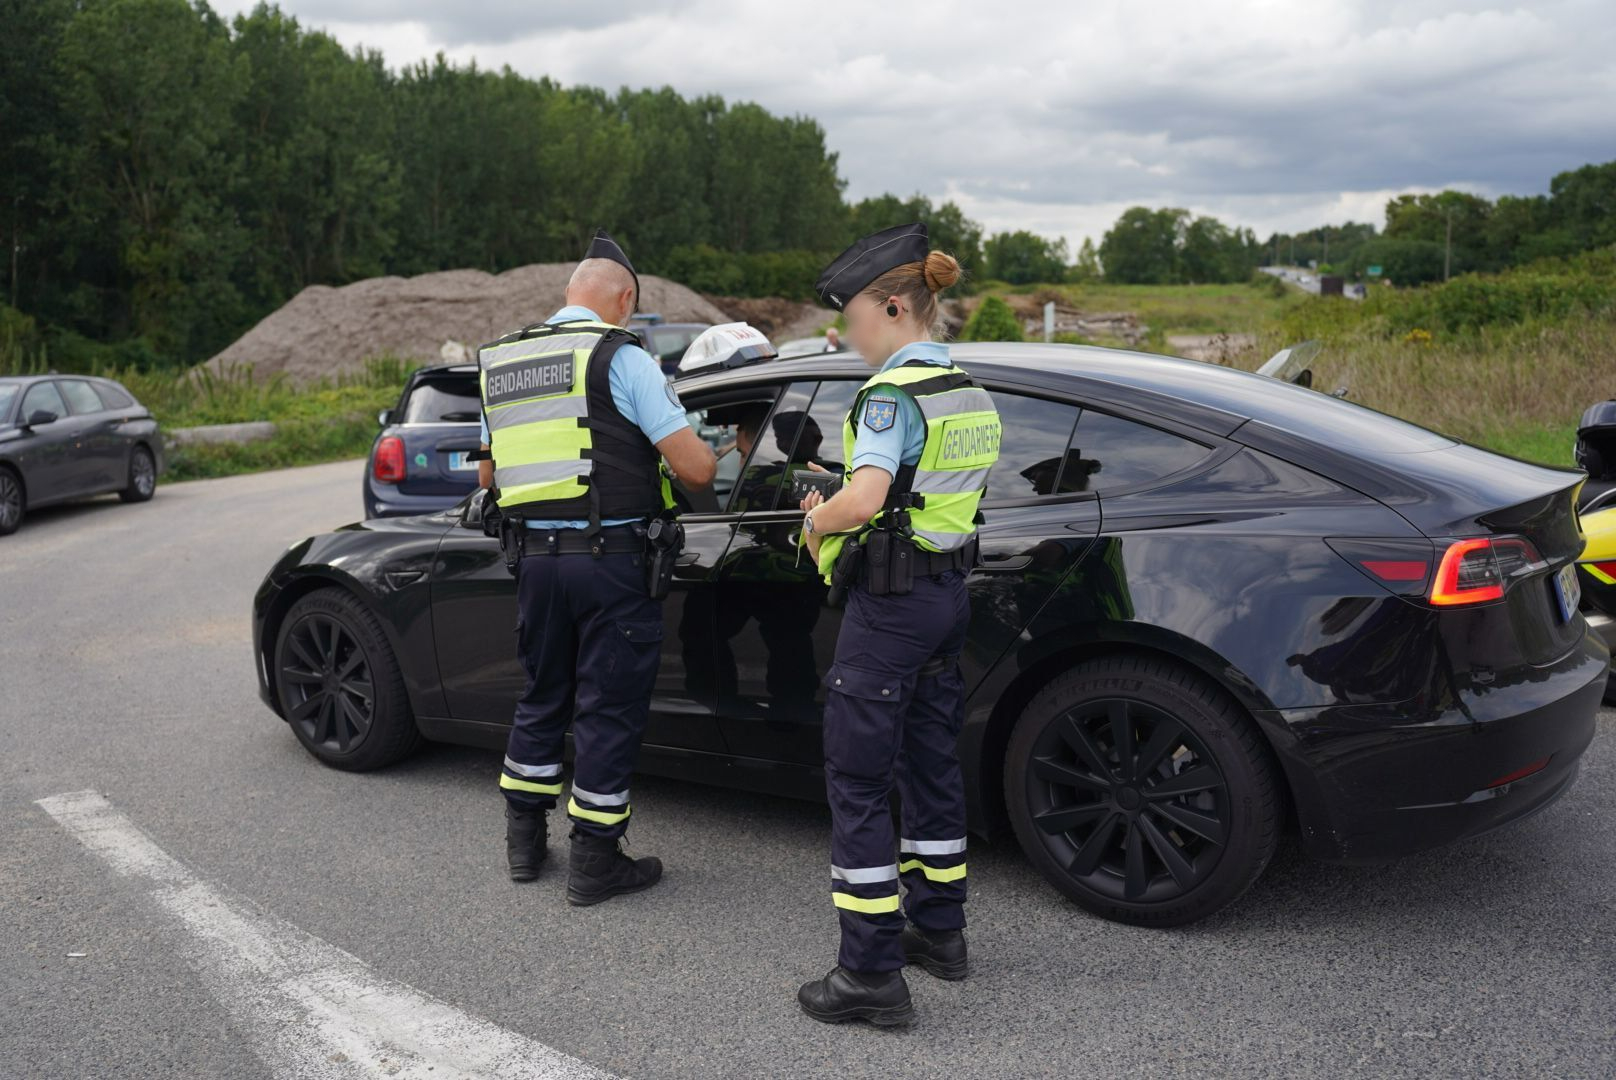 Tout le week-end, des gendarmes étaient mobilisées à des endroits stratégiques de Seine-et-Marne pour relever notamment les excès de vitesse des automobilistes. (Illustration) LP/Sami Alami